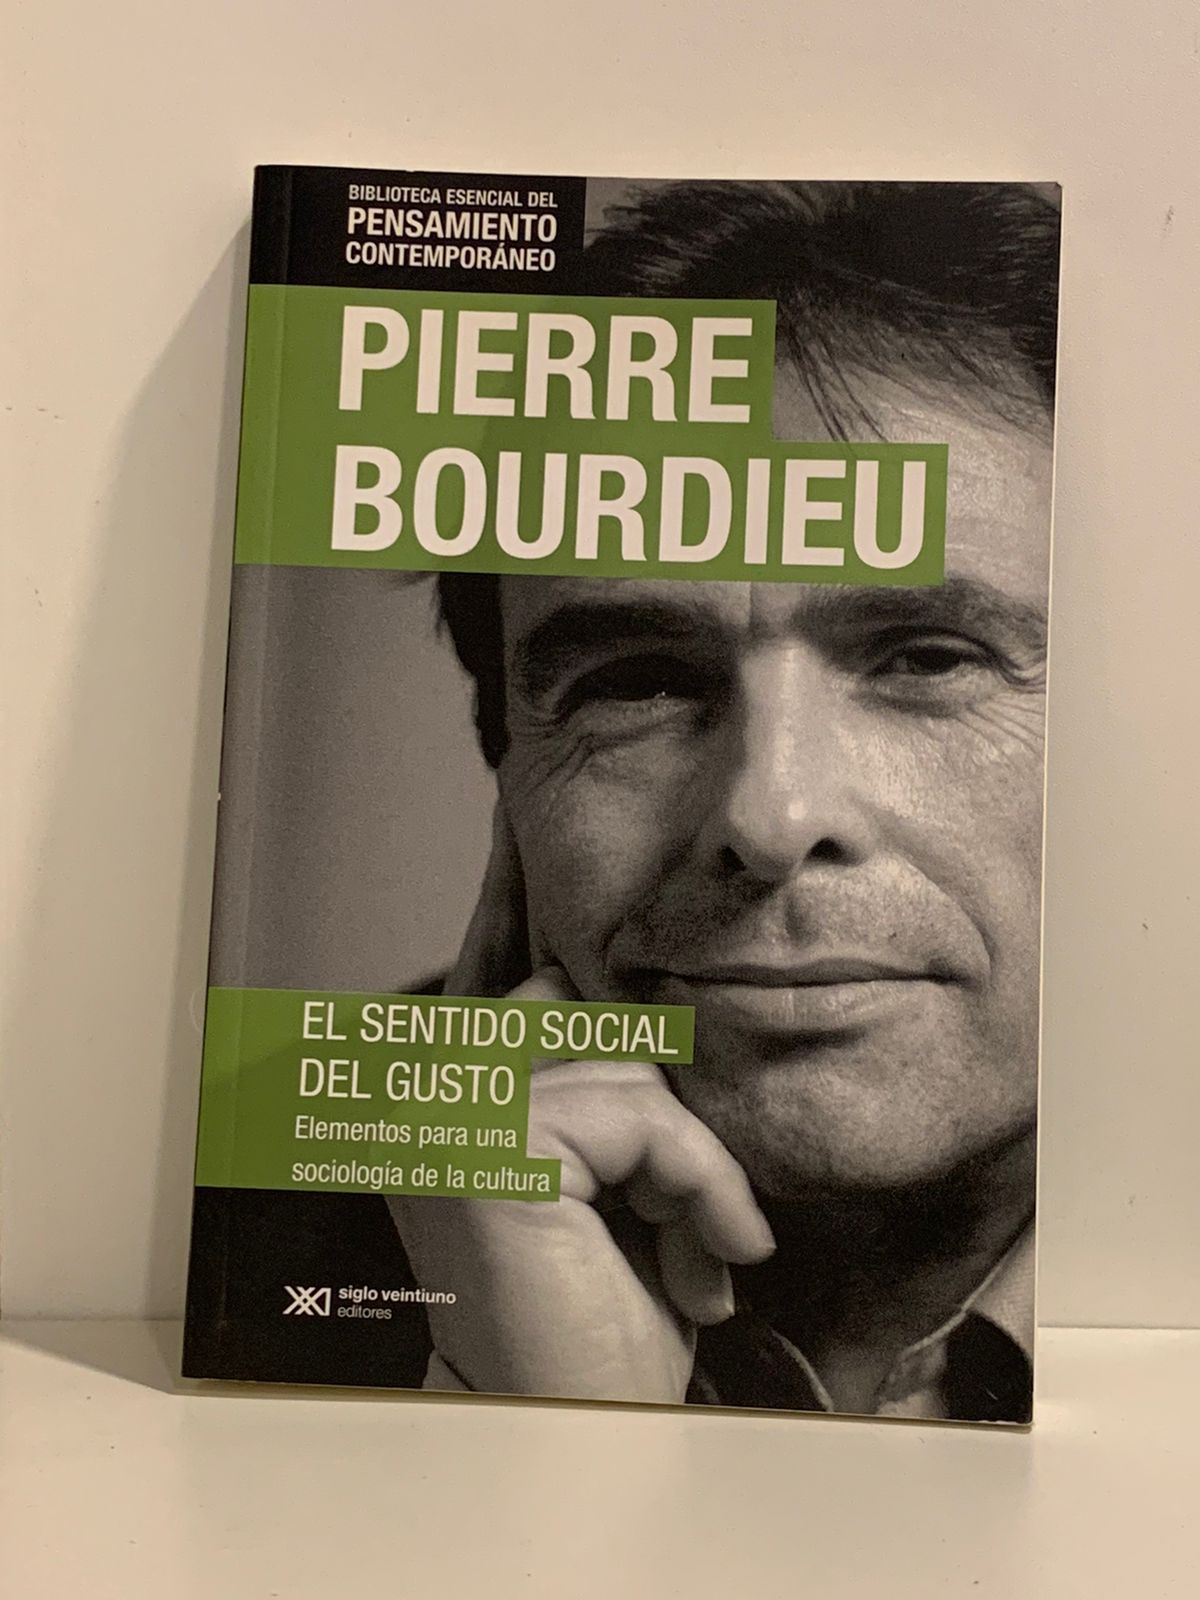 Pierre Bourdifu - El sentido social del gusto (Frente)